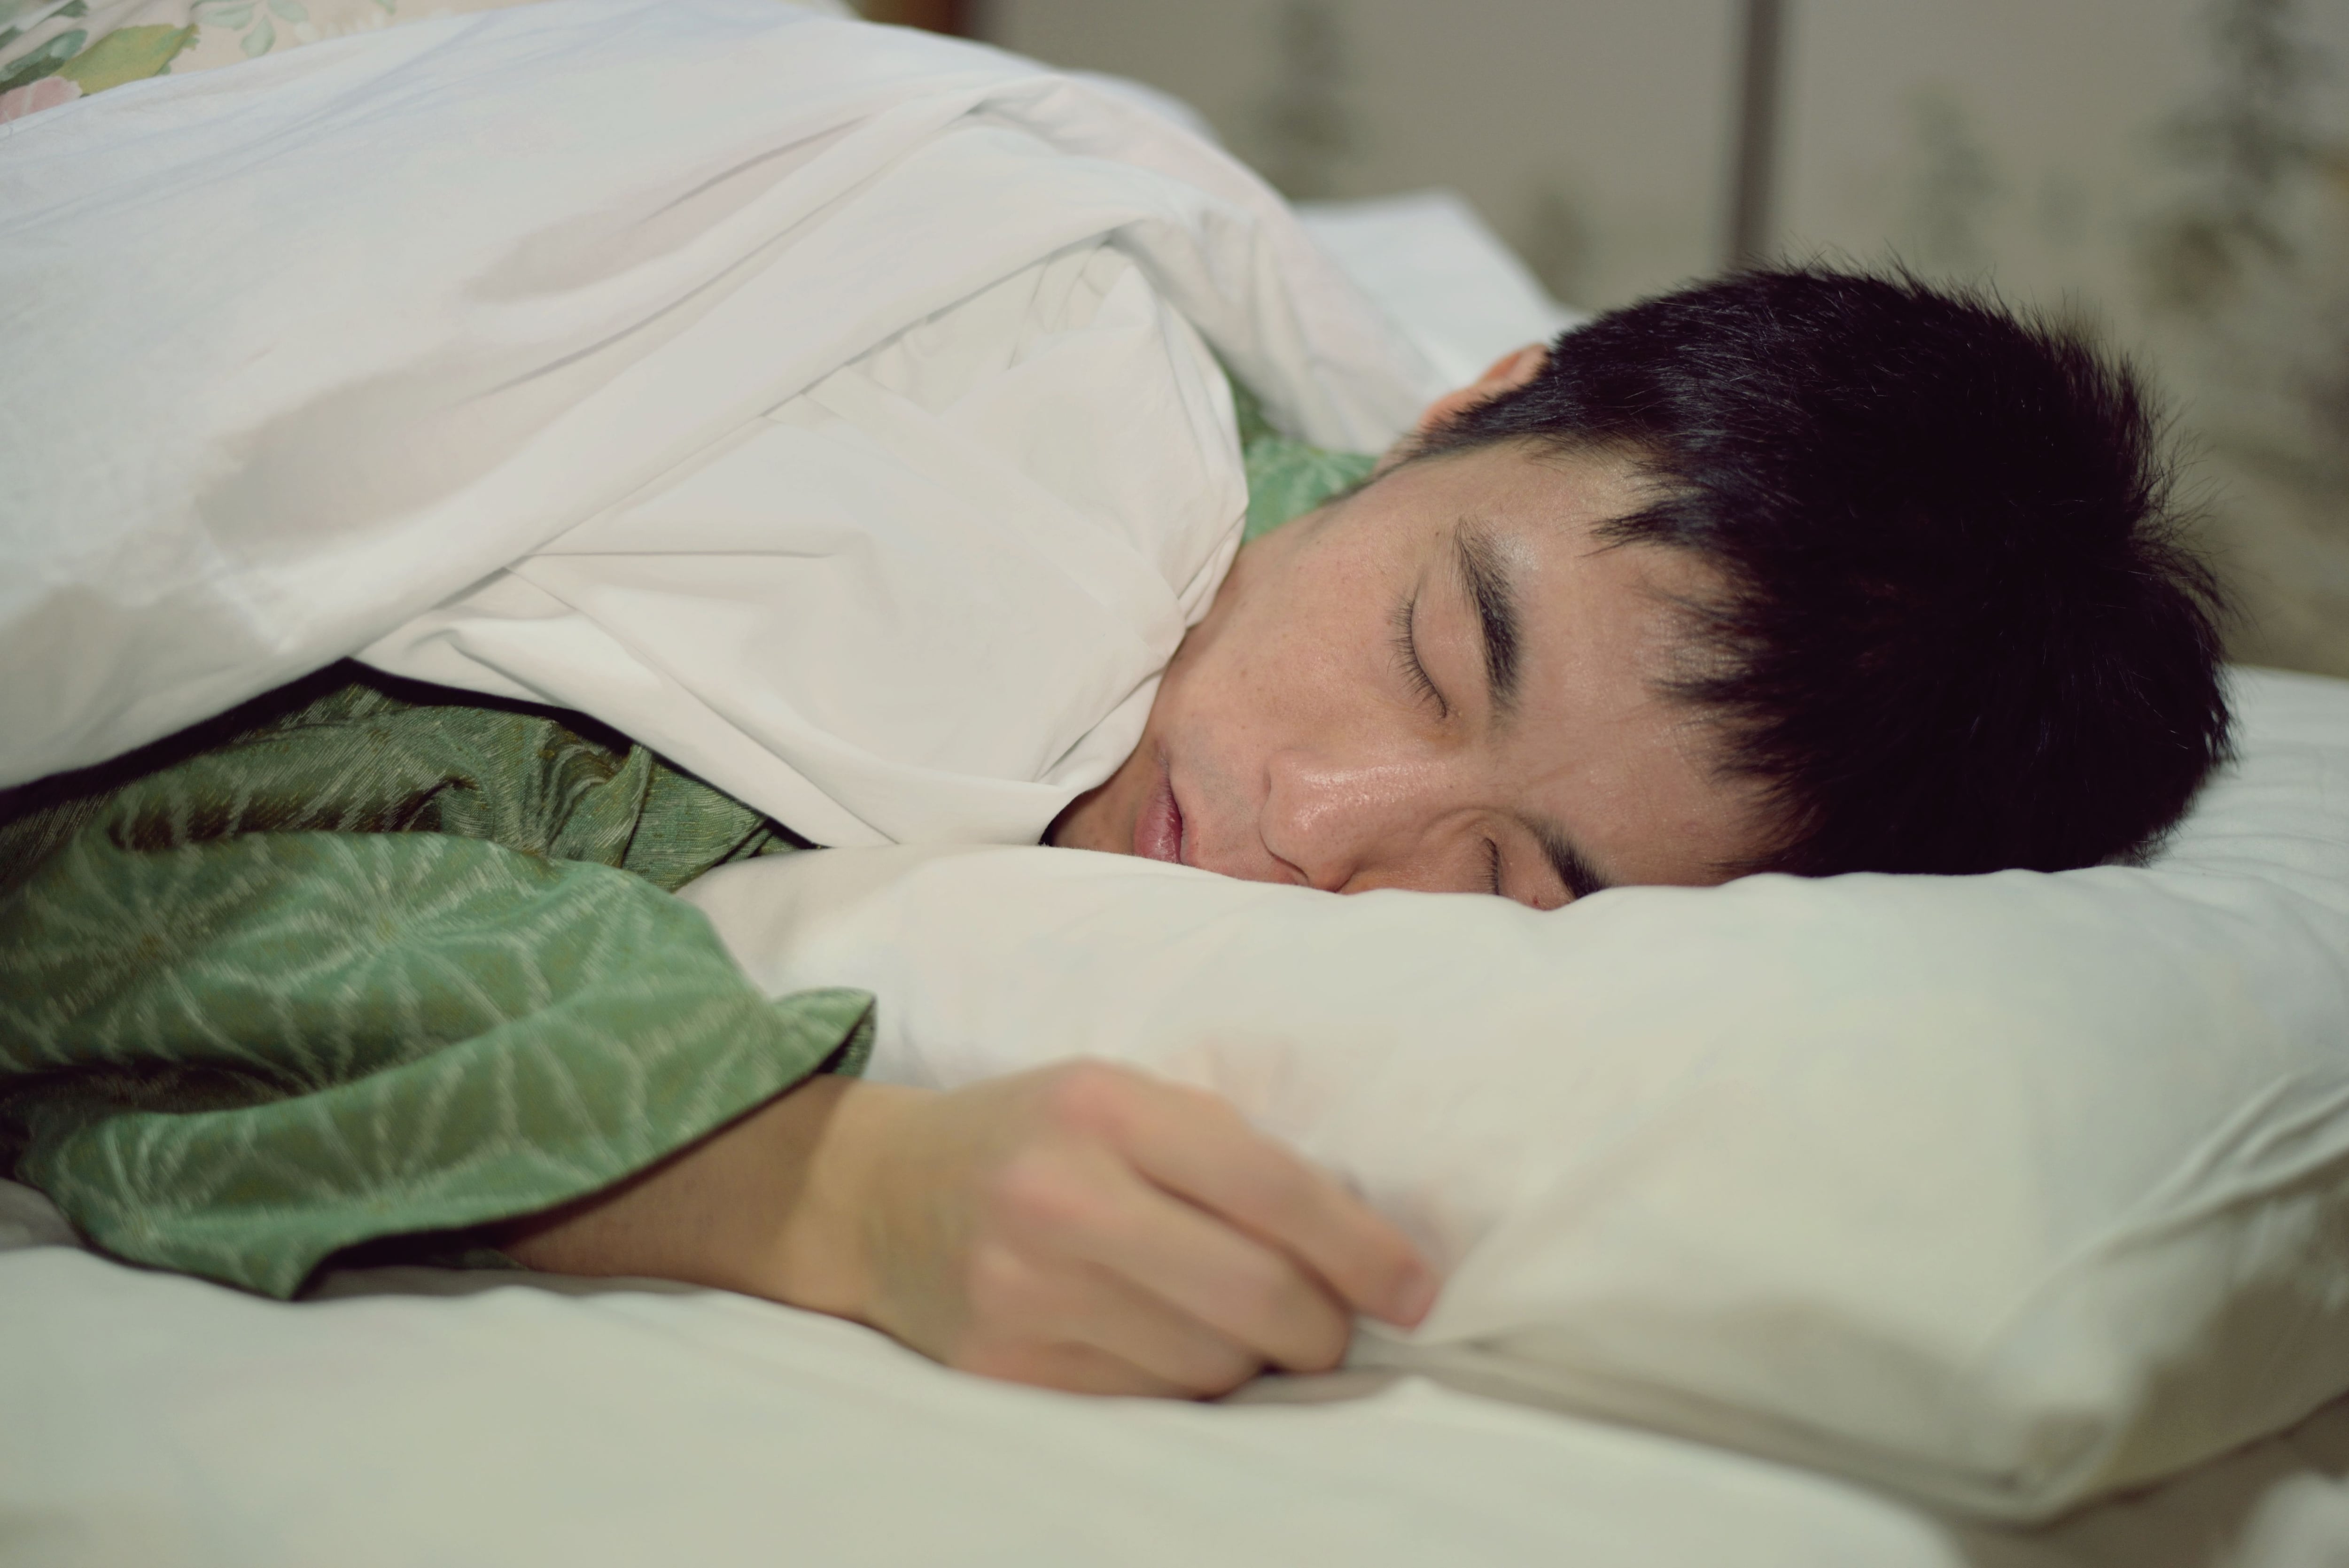 Dormir bien  Cuántas horas de sueño debe tener según su edad - Gente -  Cultura 